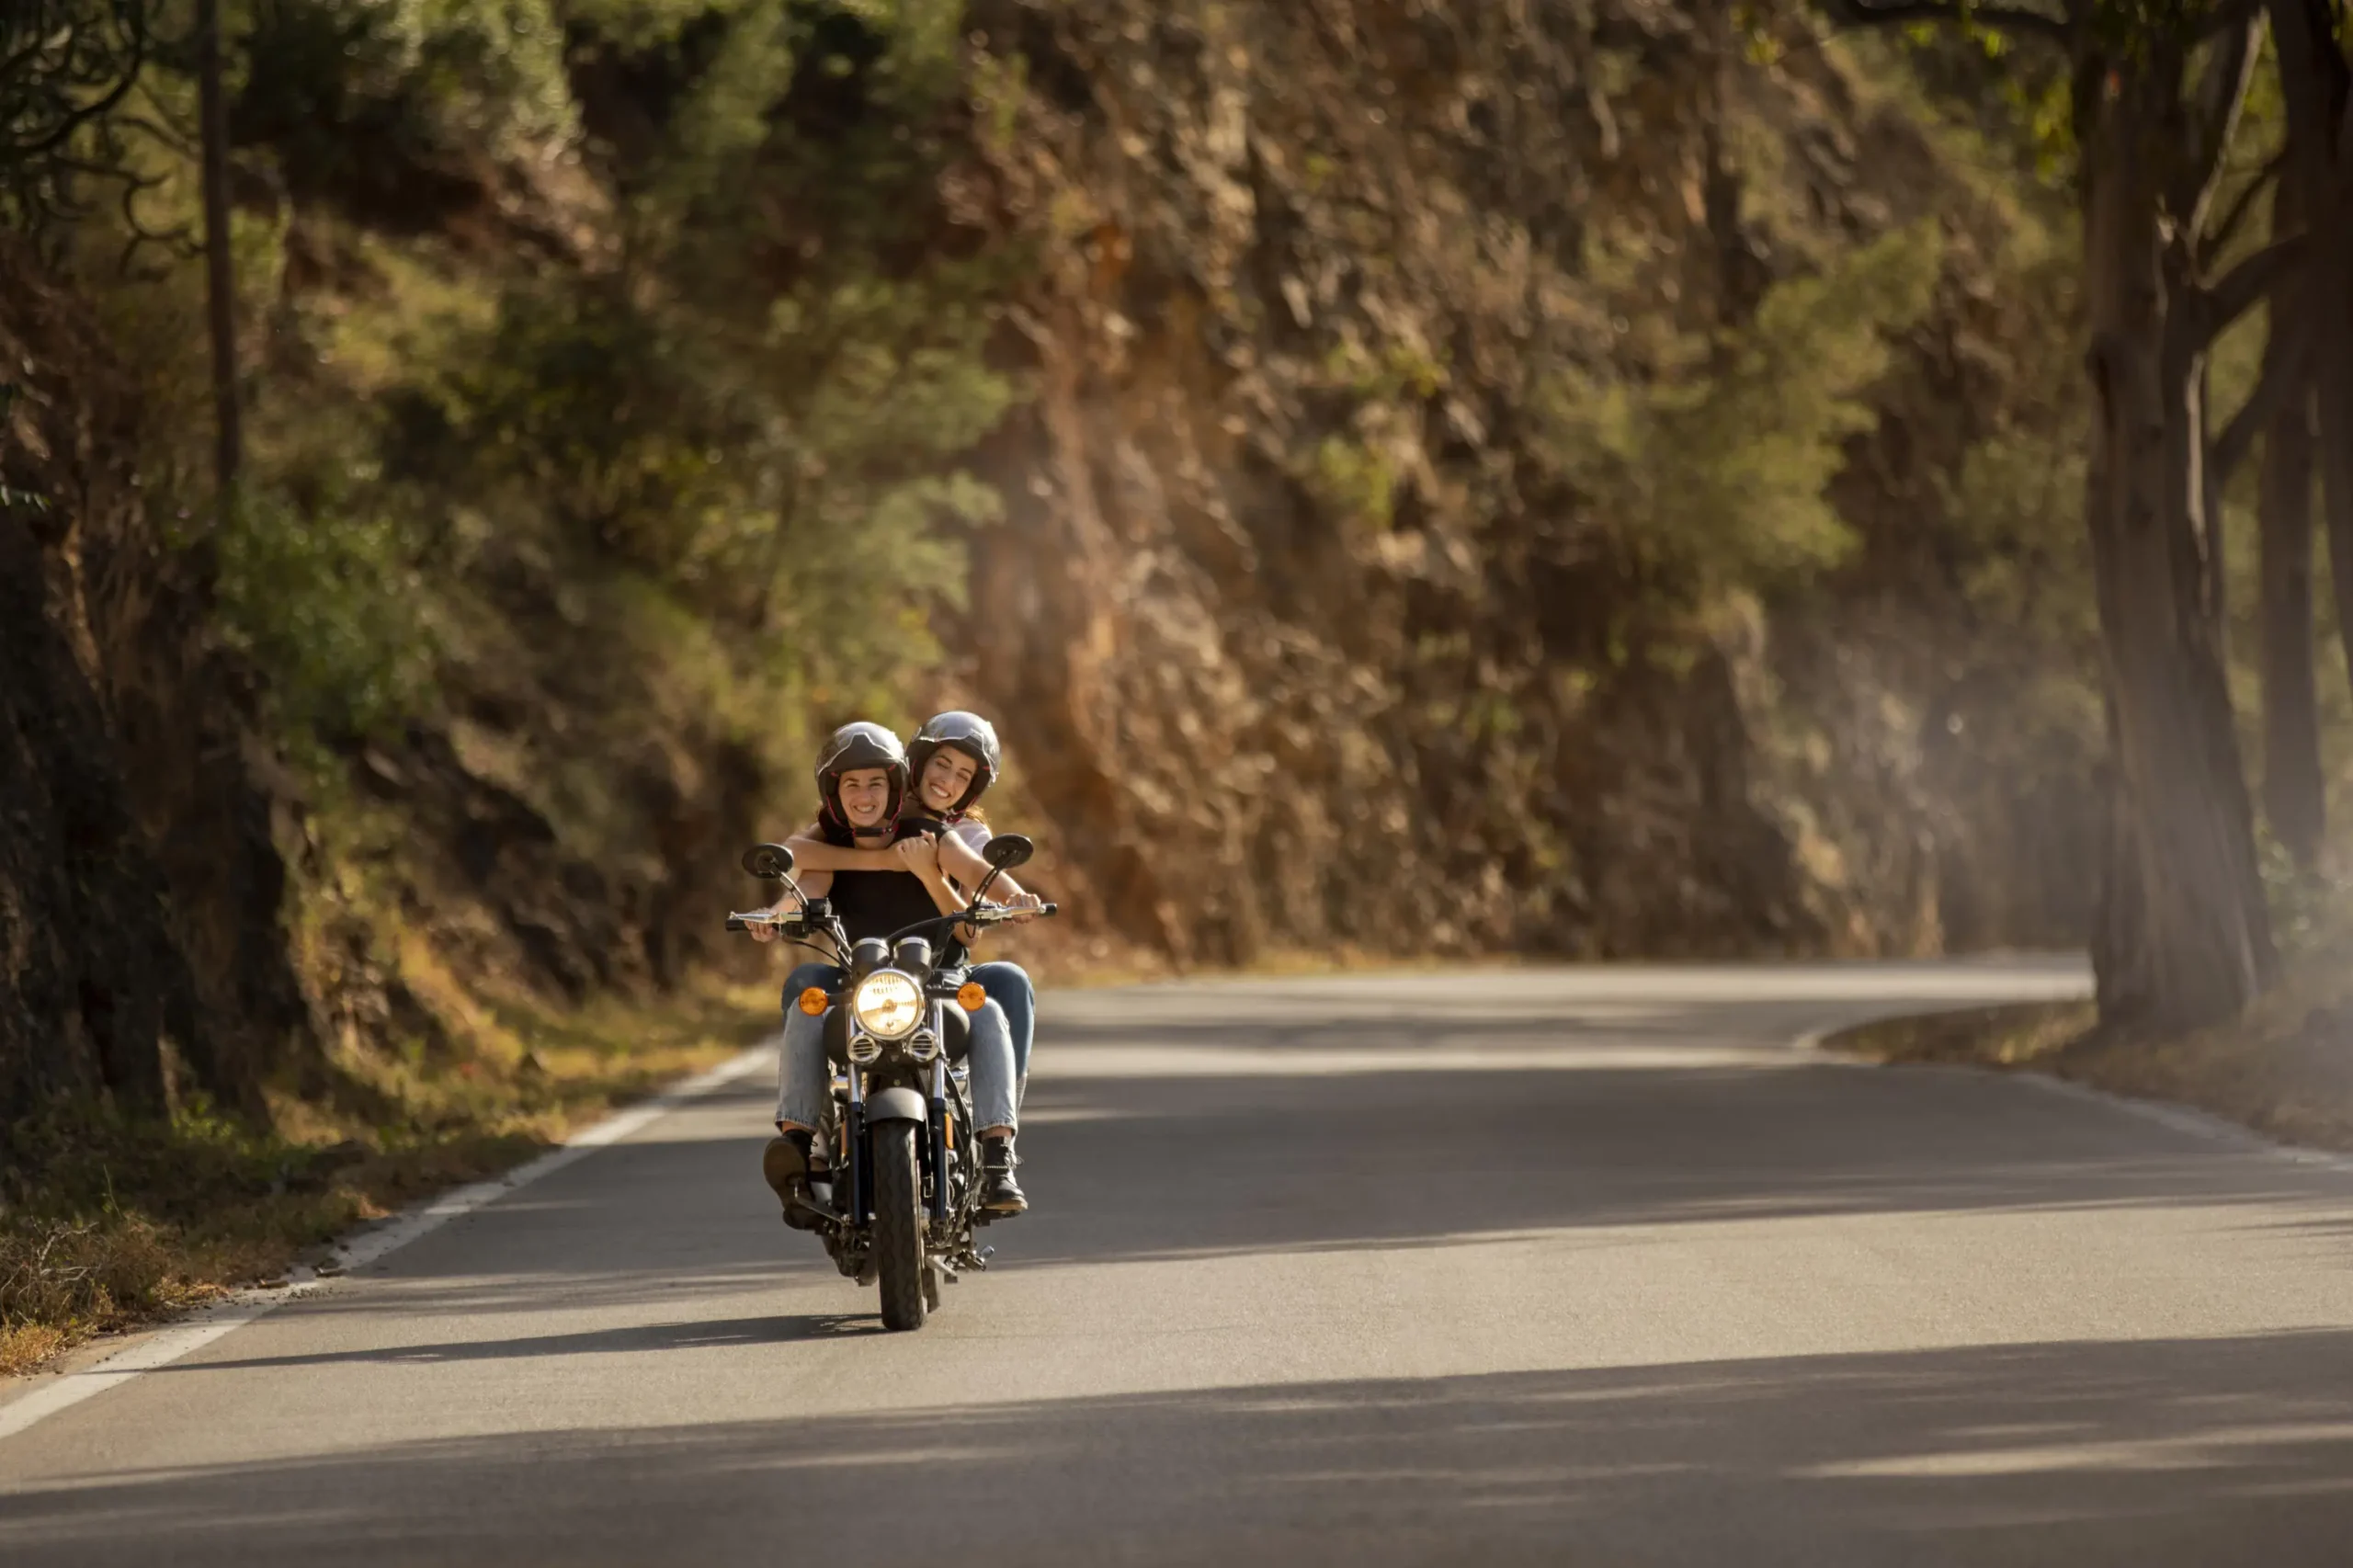 vivir ene españa trabajar con la motocicleta - Qué es ser un rider